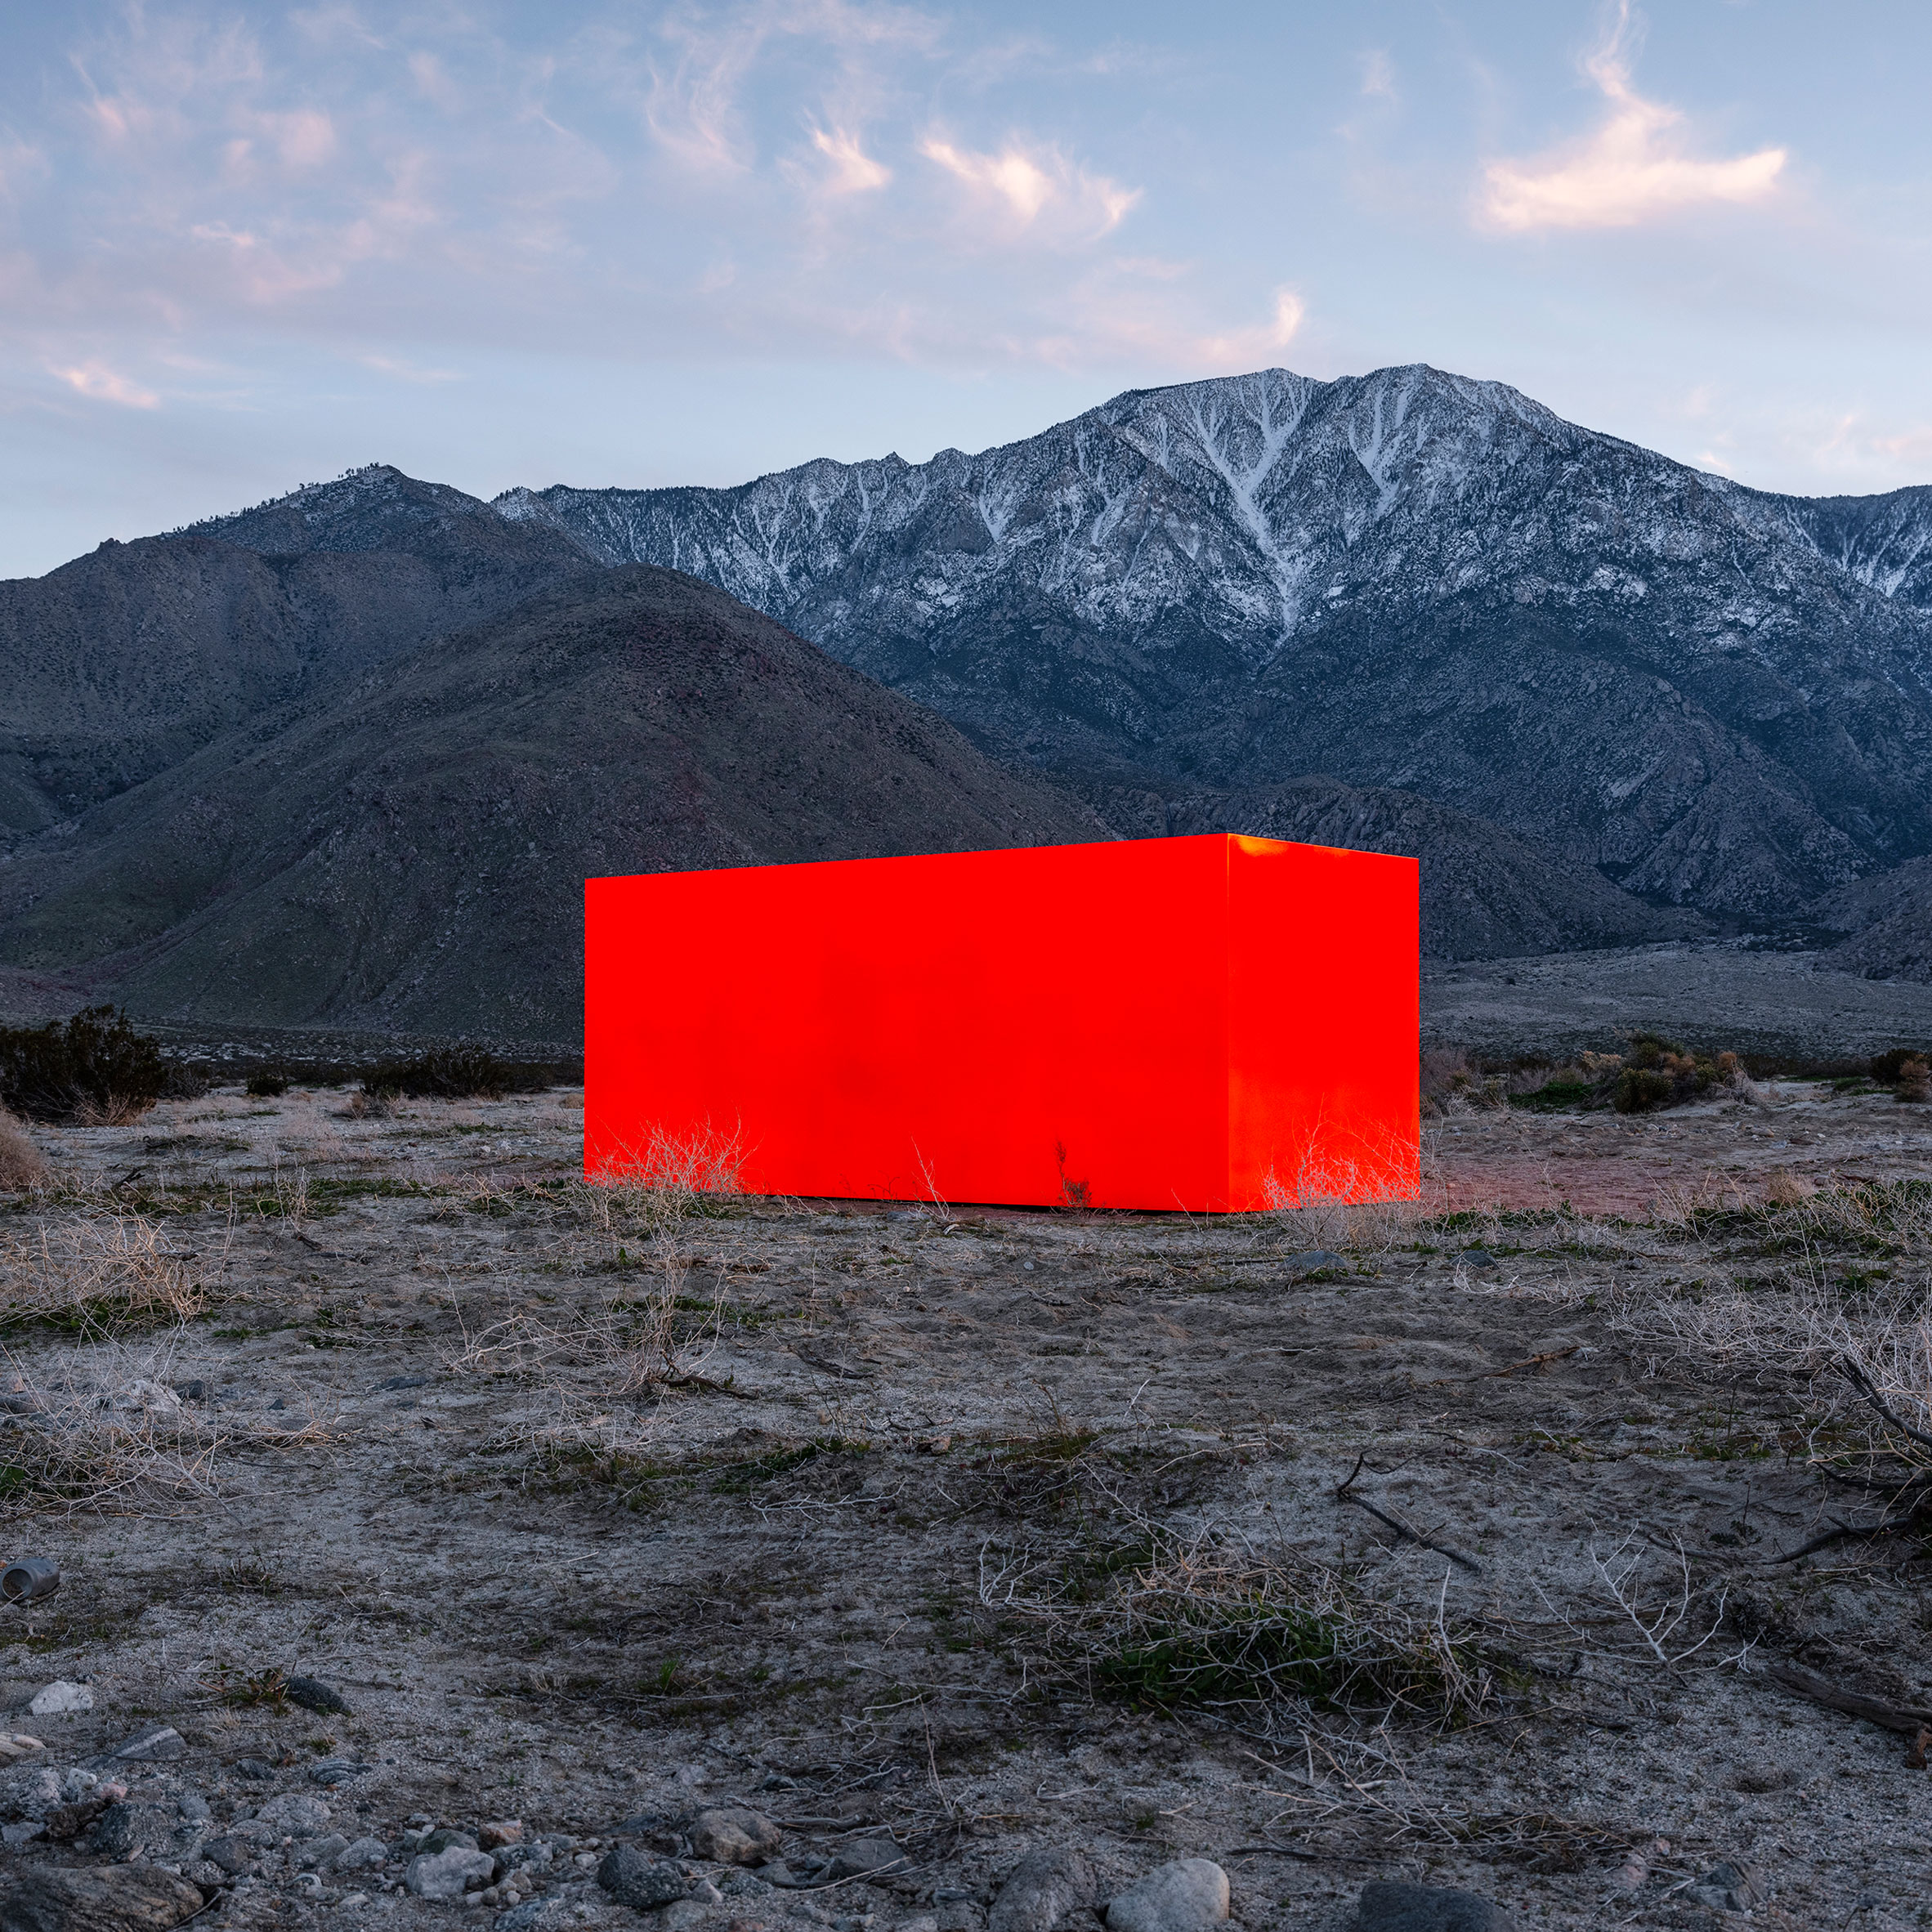 Sterling Ruby's installation for Desert X 2019